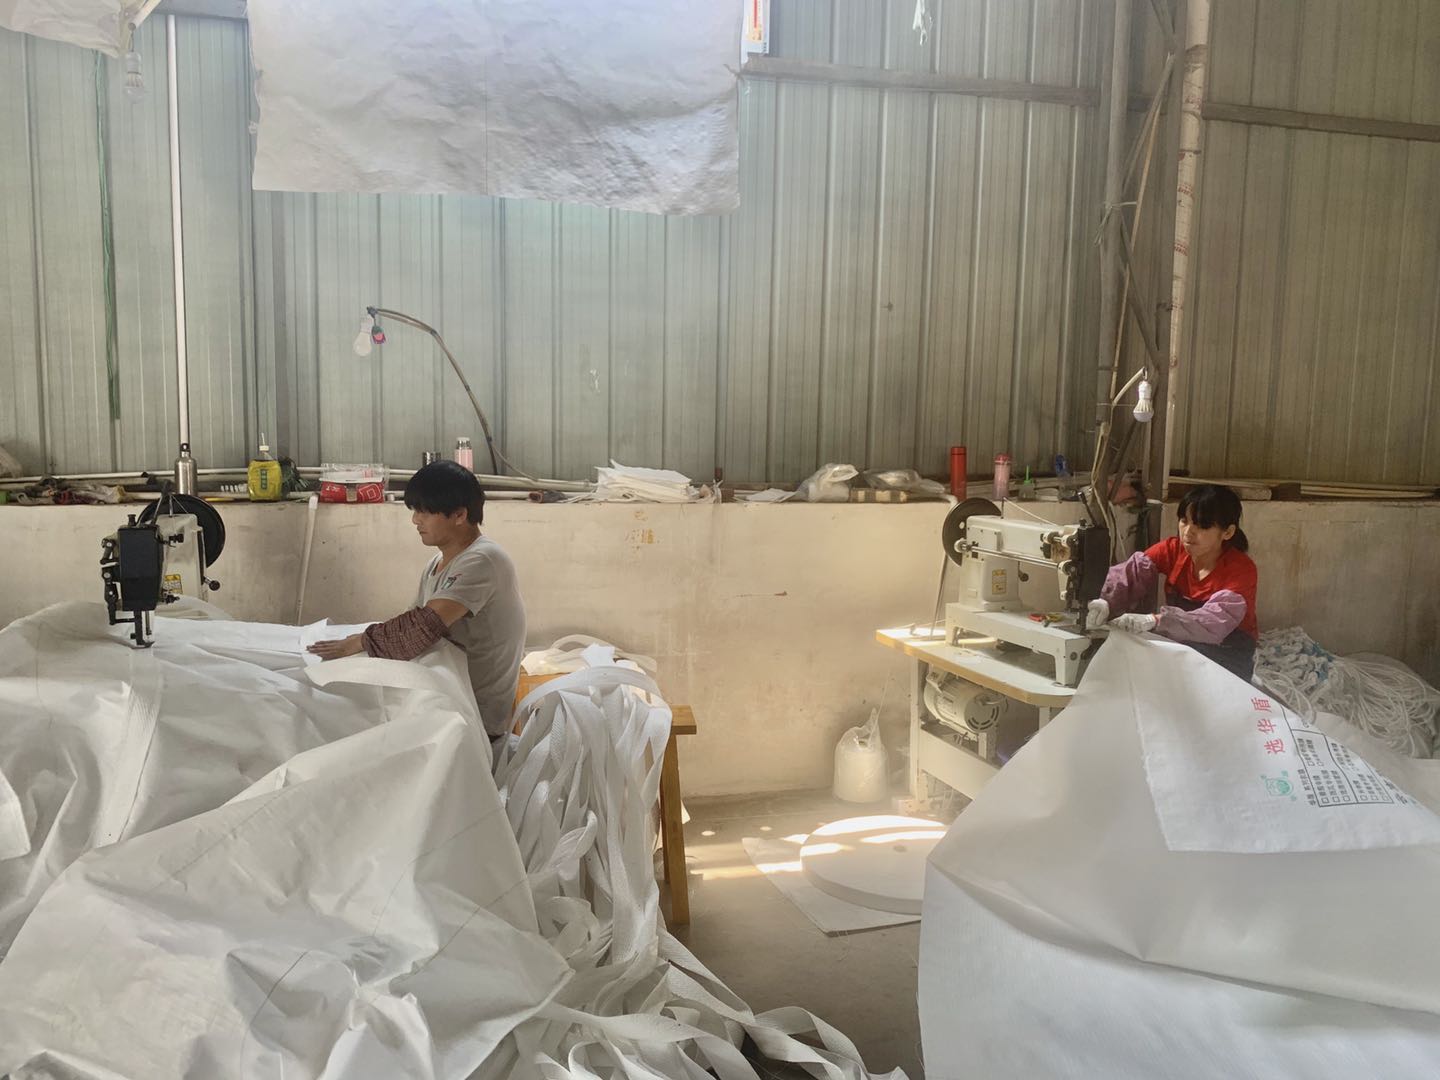 工人们正在裁剪编织布